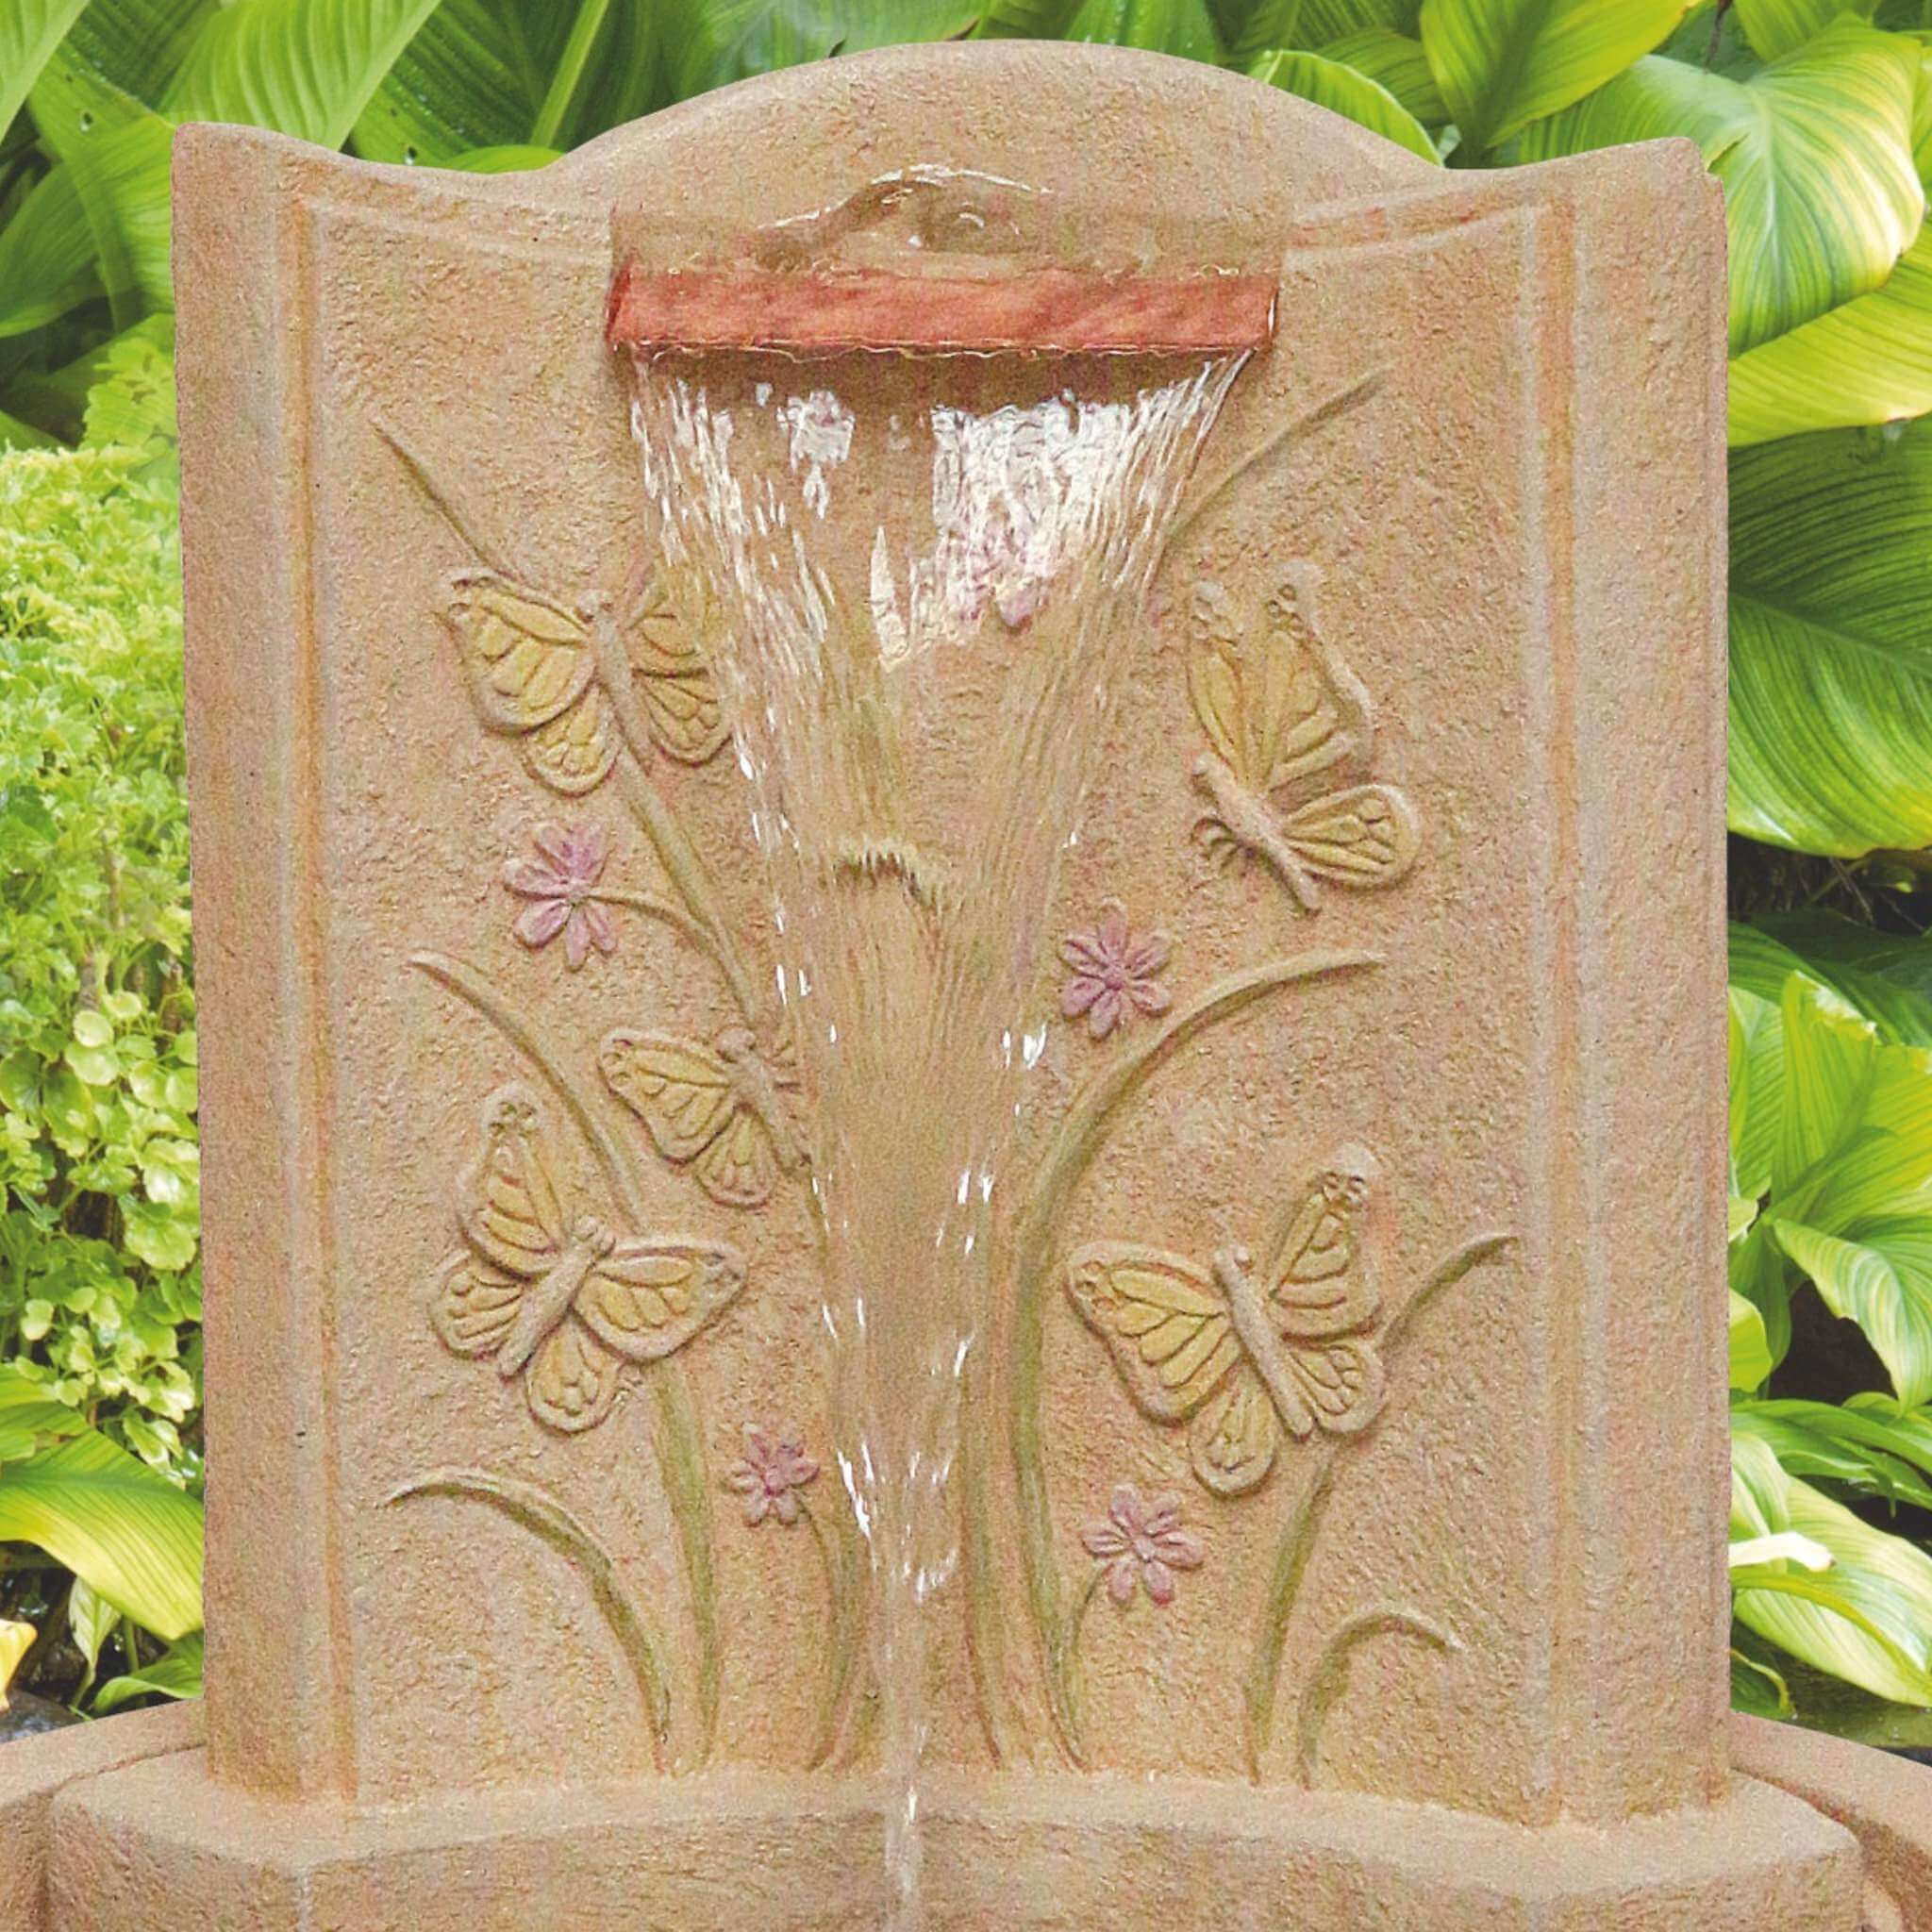 Lido Butterfly Concrete Fountain w/Lights - Massarellis #3498